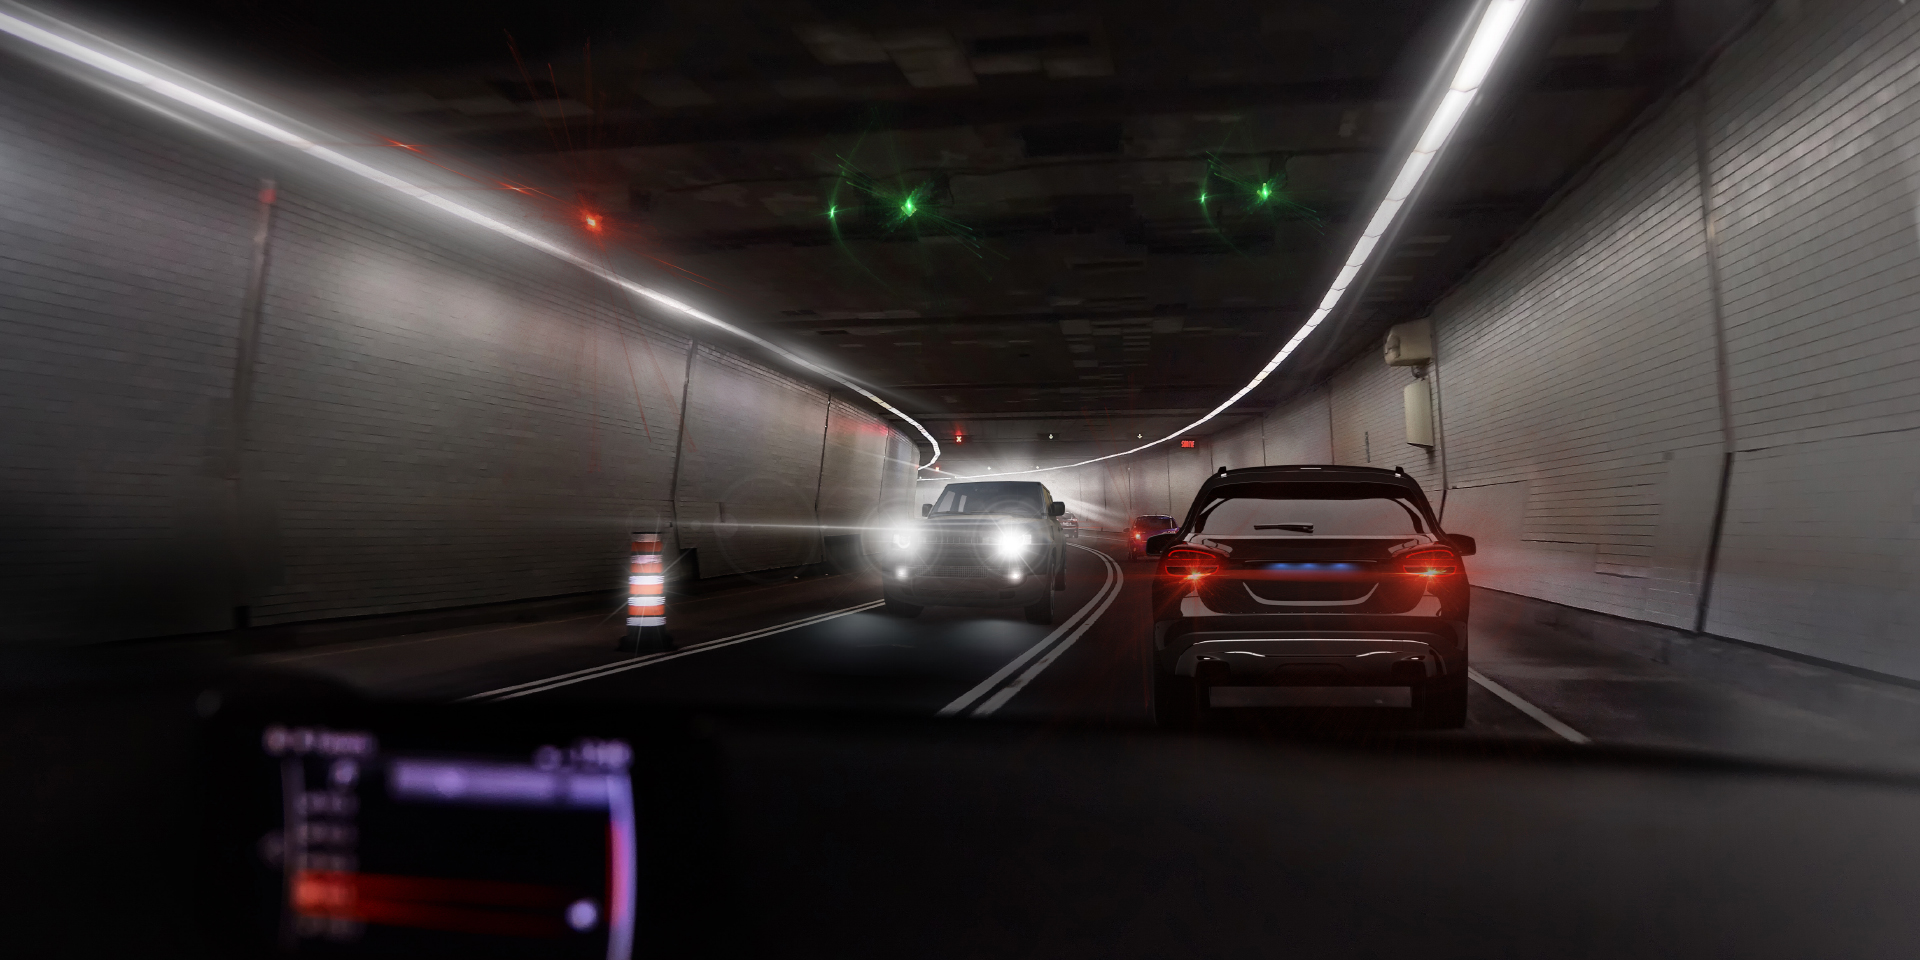 Två bilder ur en bilförares perspektiv, i en tunnel med mötande trafik. En bild visar bländning från bilen och belysningen i tunneln, medan den andra bilen visar märkbart mindre bländning.